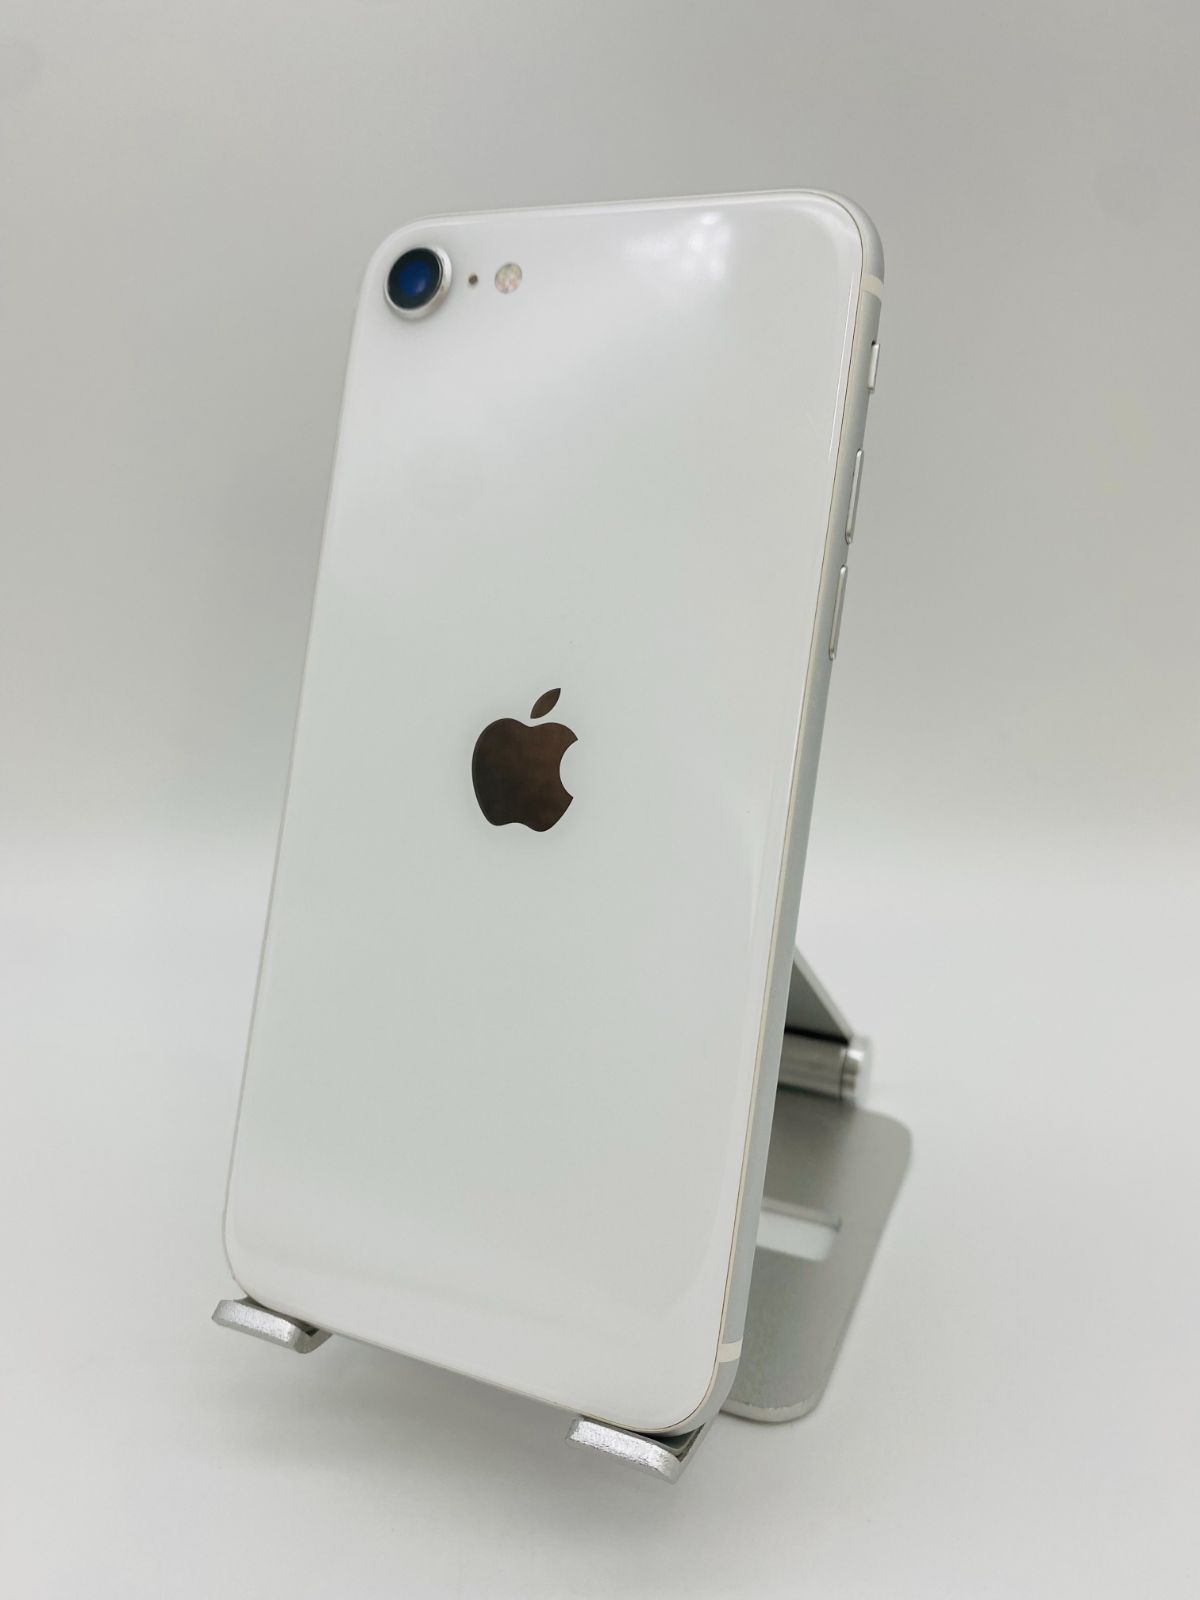 iPhone SE 第2世代 128GB ホワイト/シムフリー/新品バッテリー100